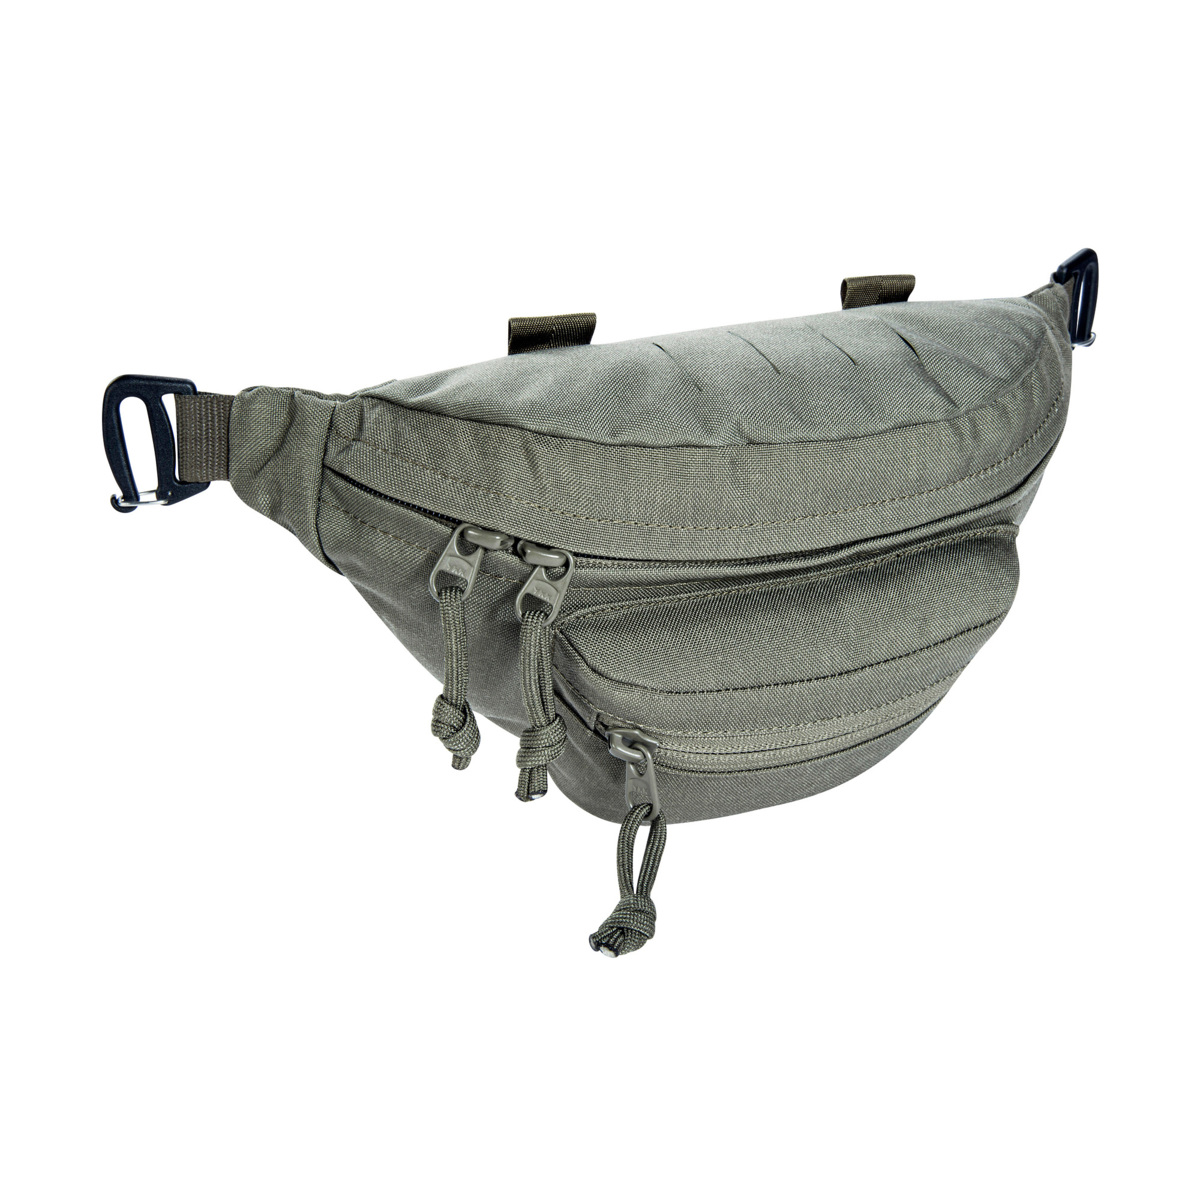 Modular Hip Bag IRR